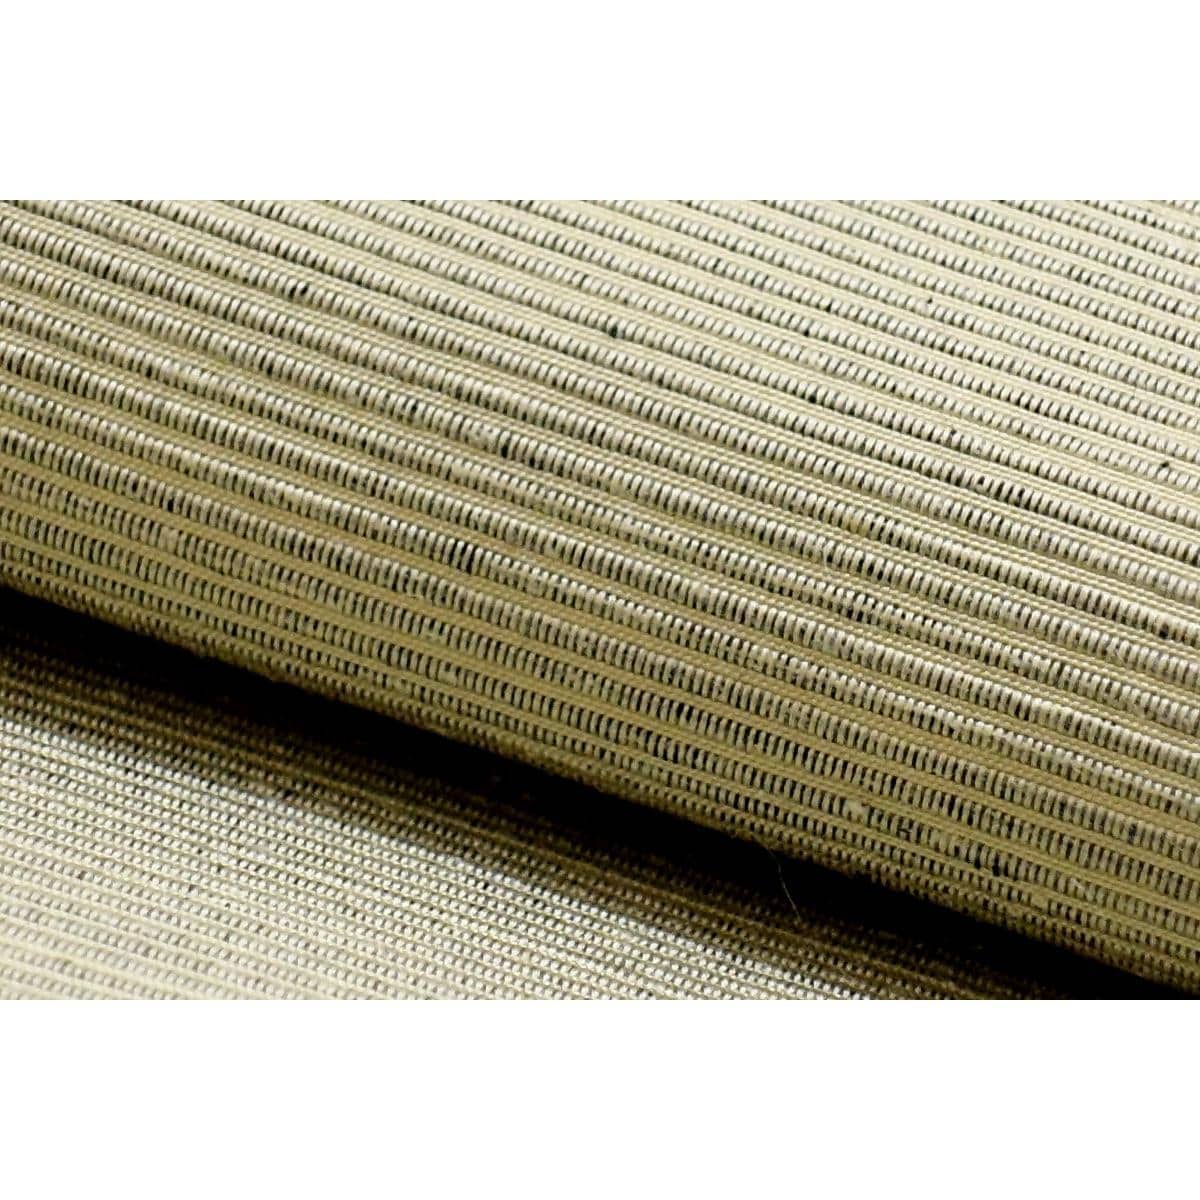 Nagoya obi pongee weave molding